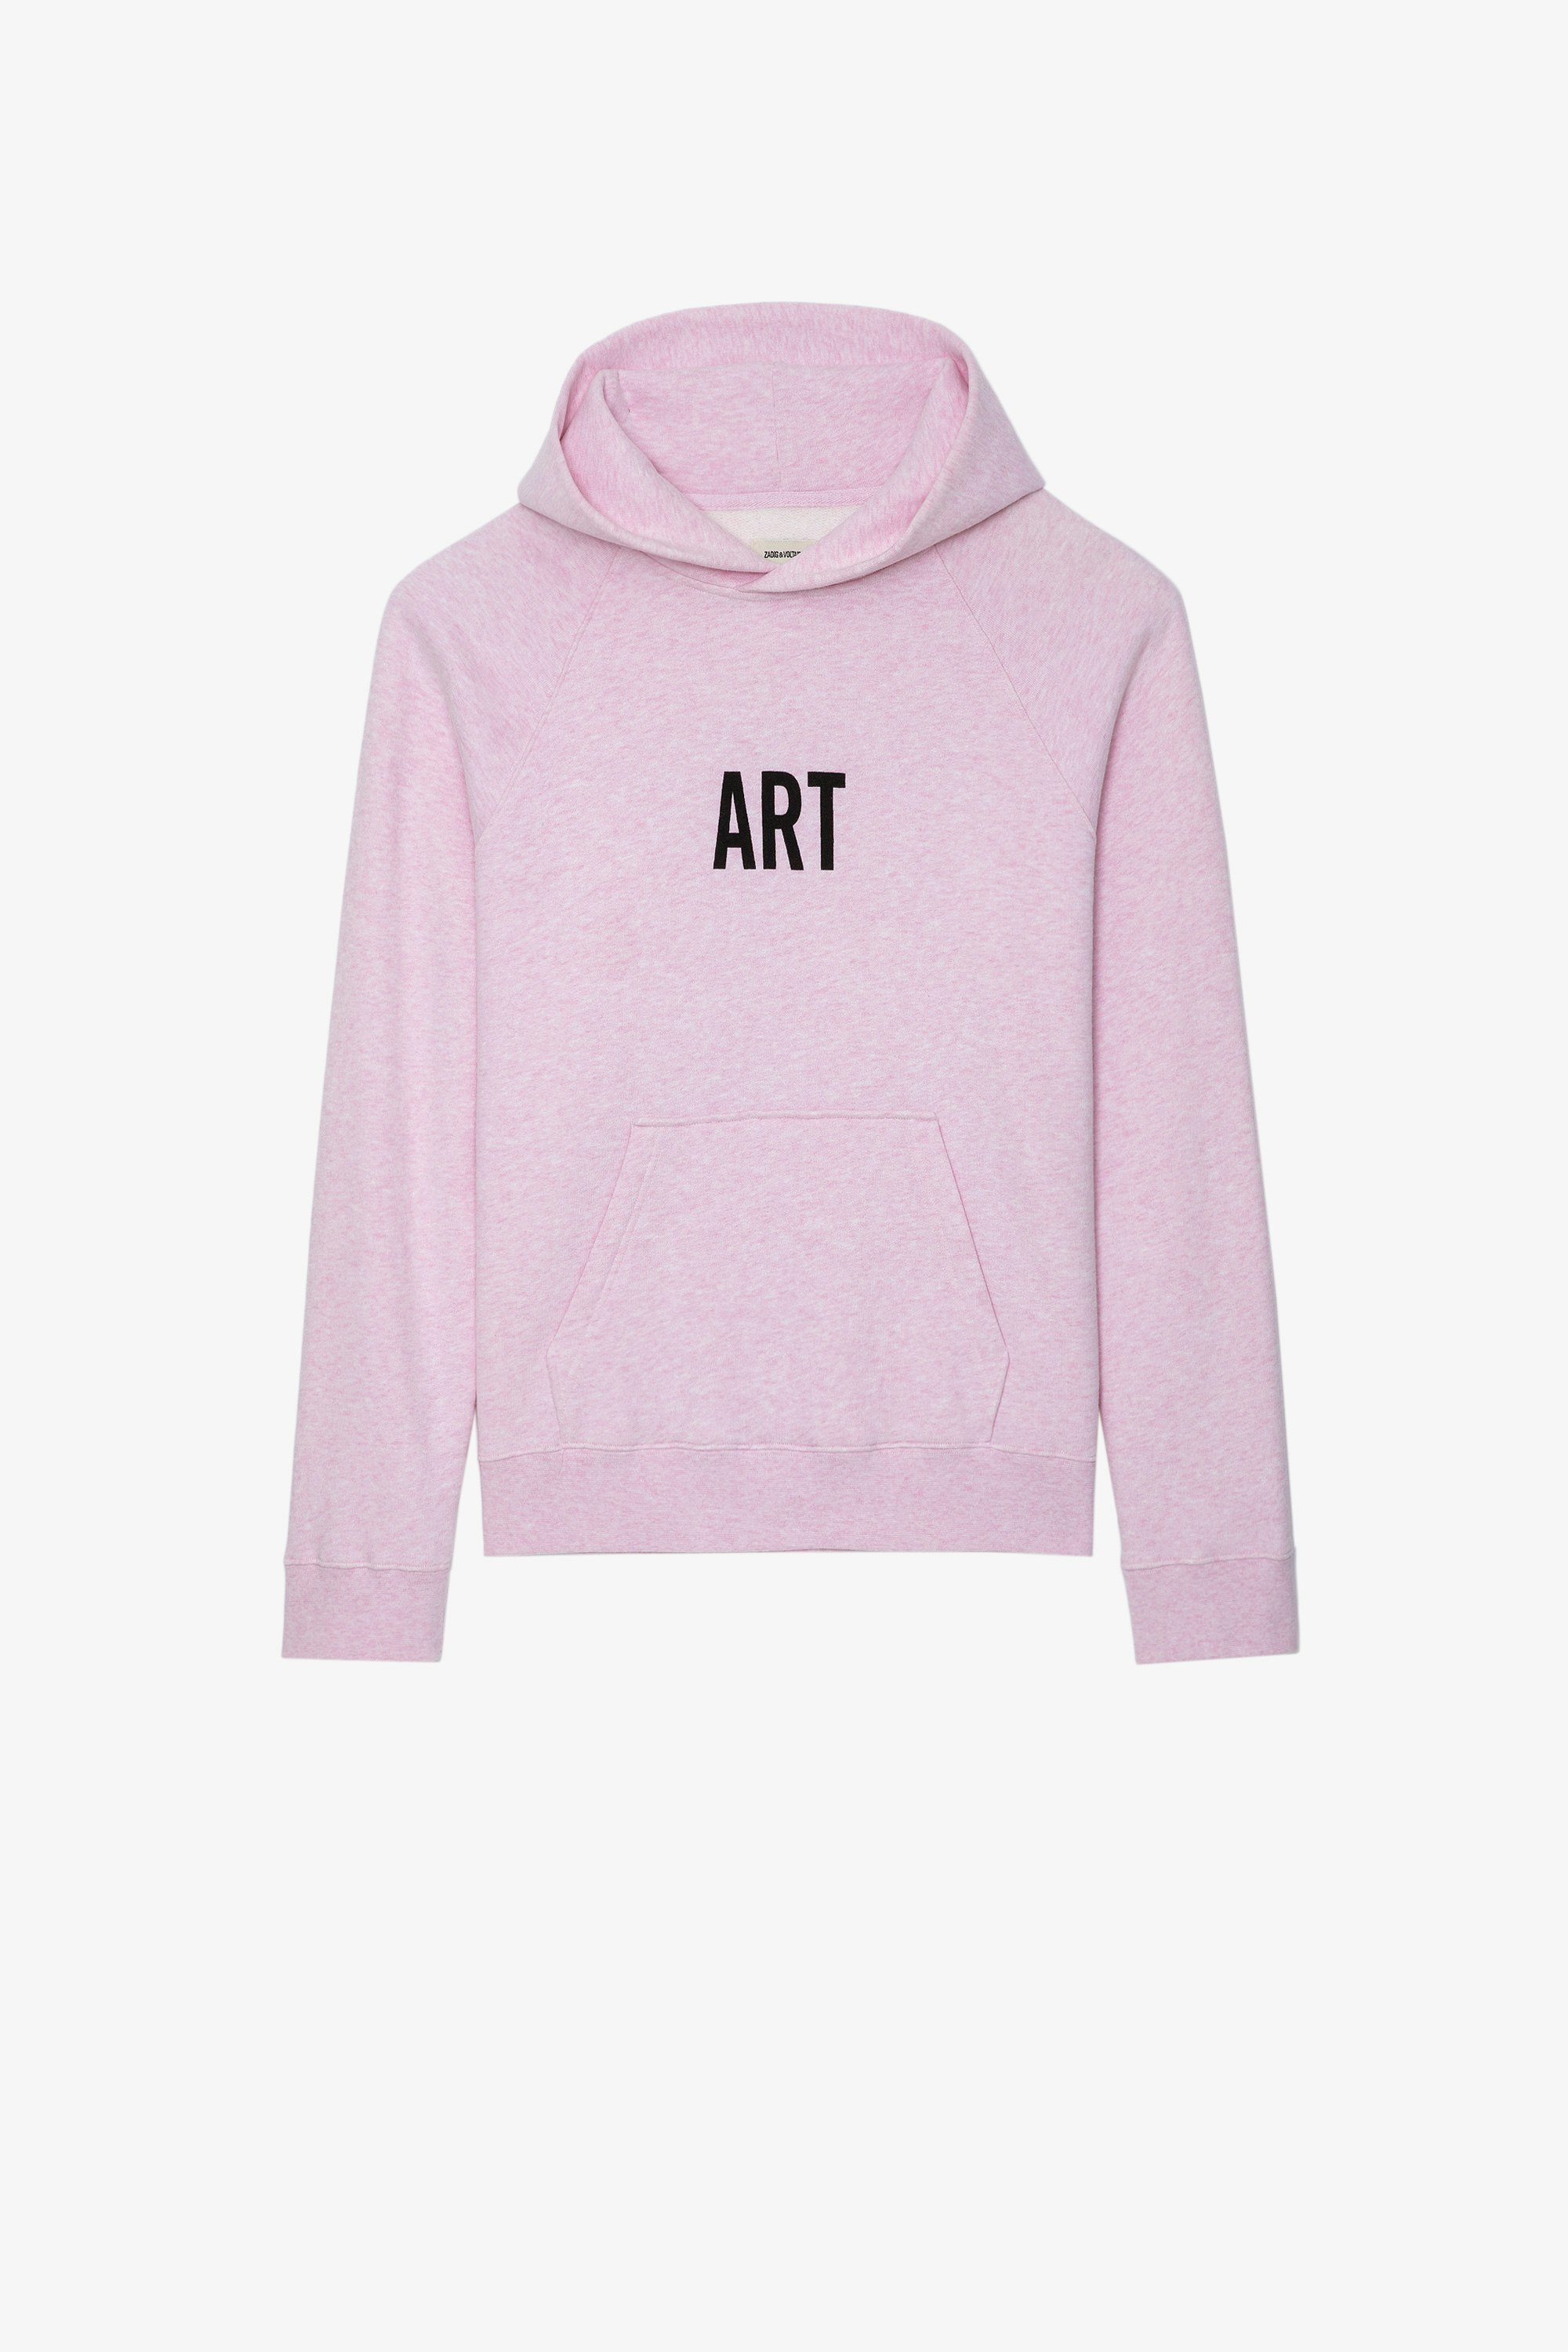 Sweatshirt Georgy Photoprint Sweatshirt à capuche en coton rose orné d'un imprimé photoprint et des messages "Art" et "Amour Toujours" Femme